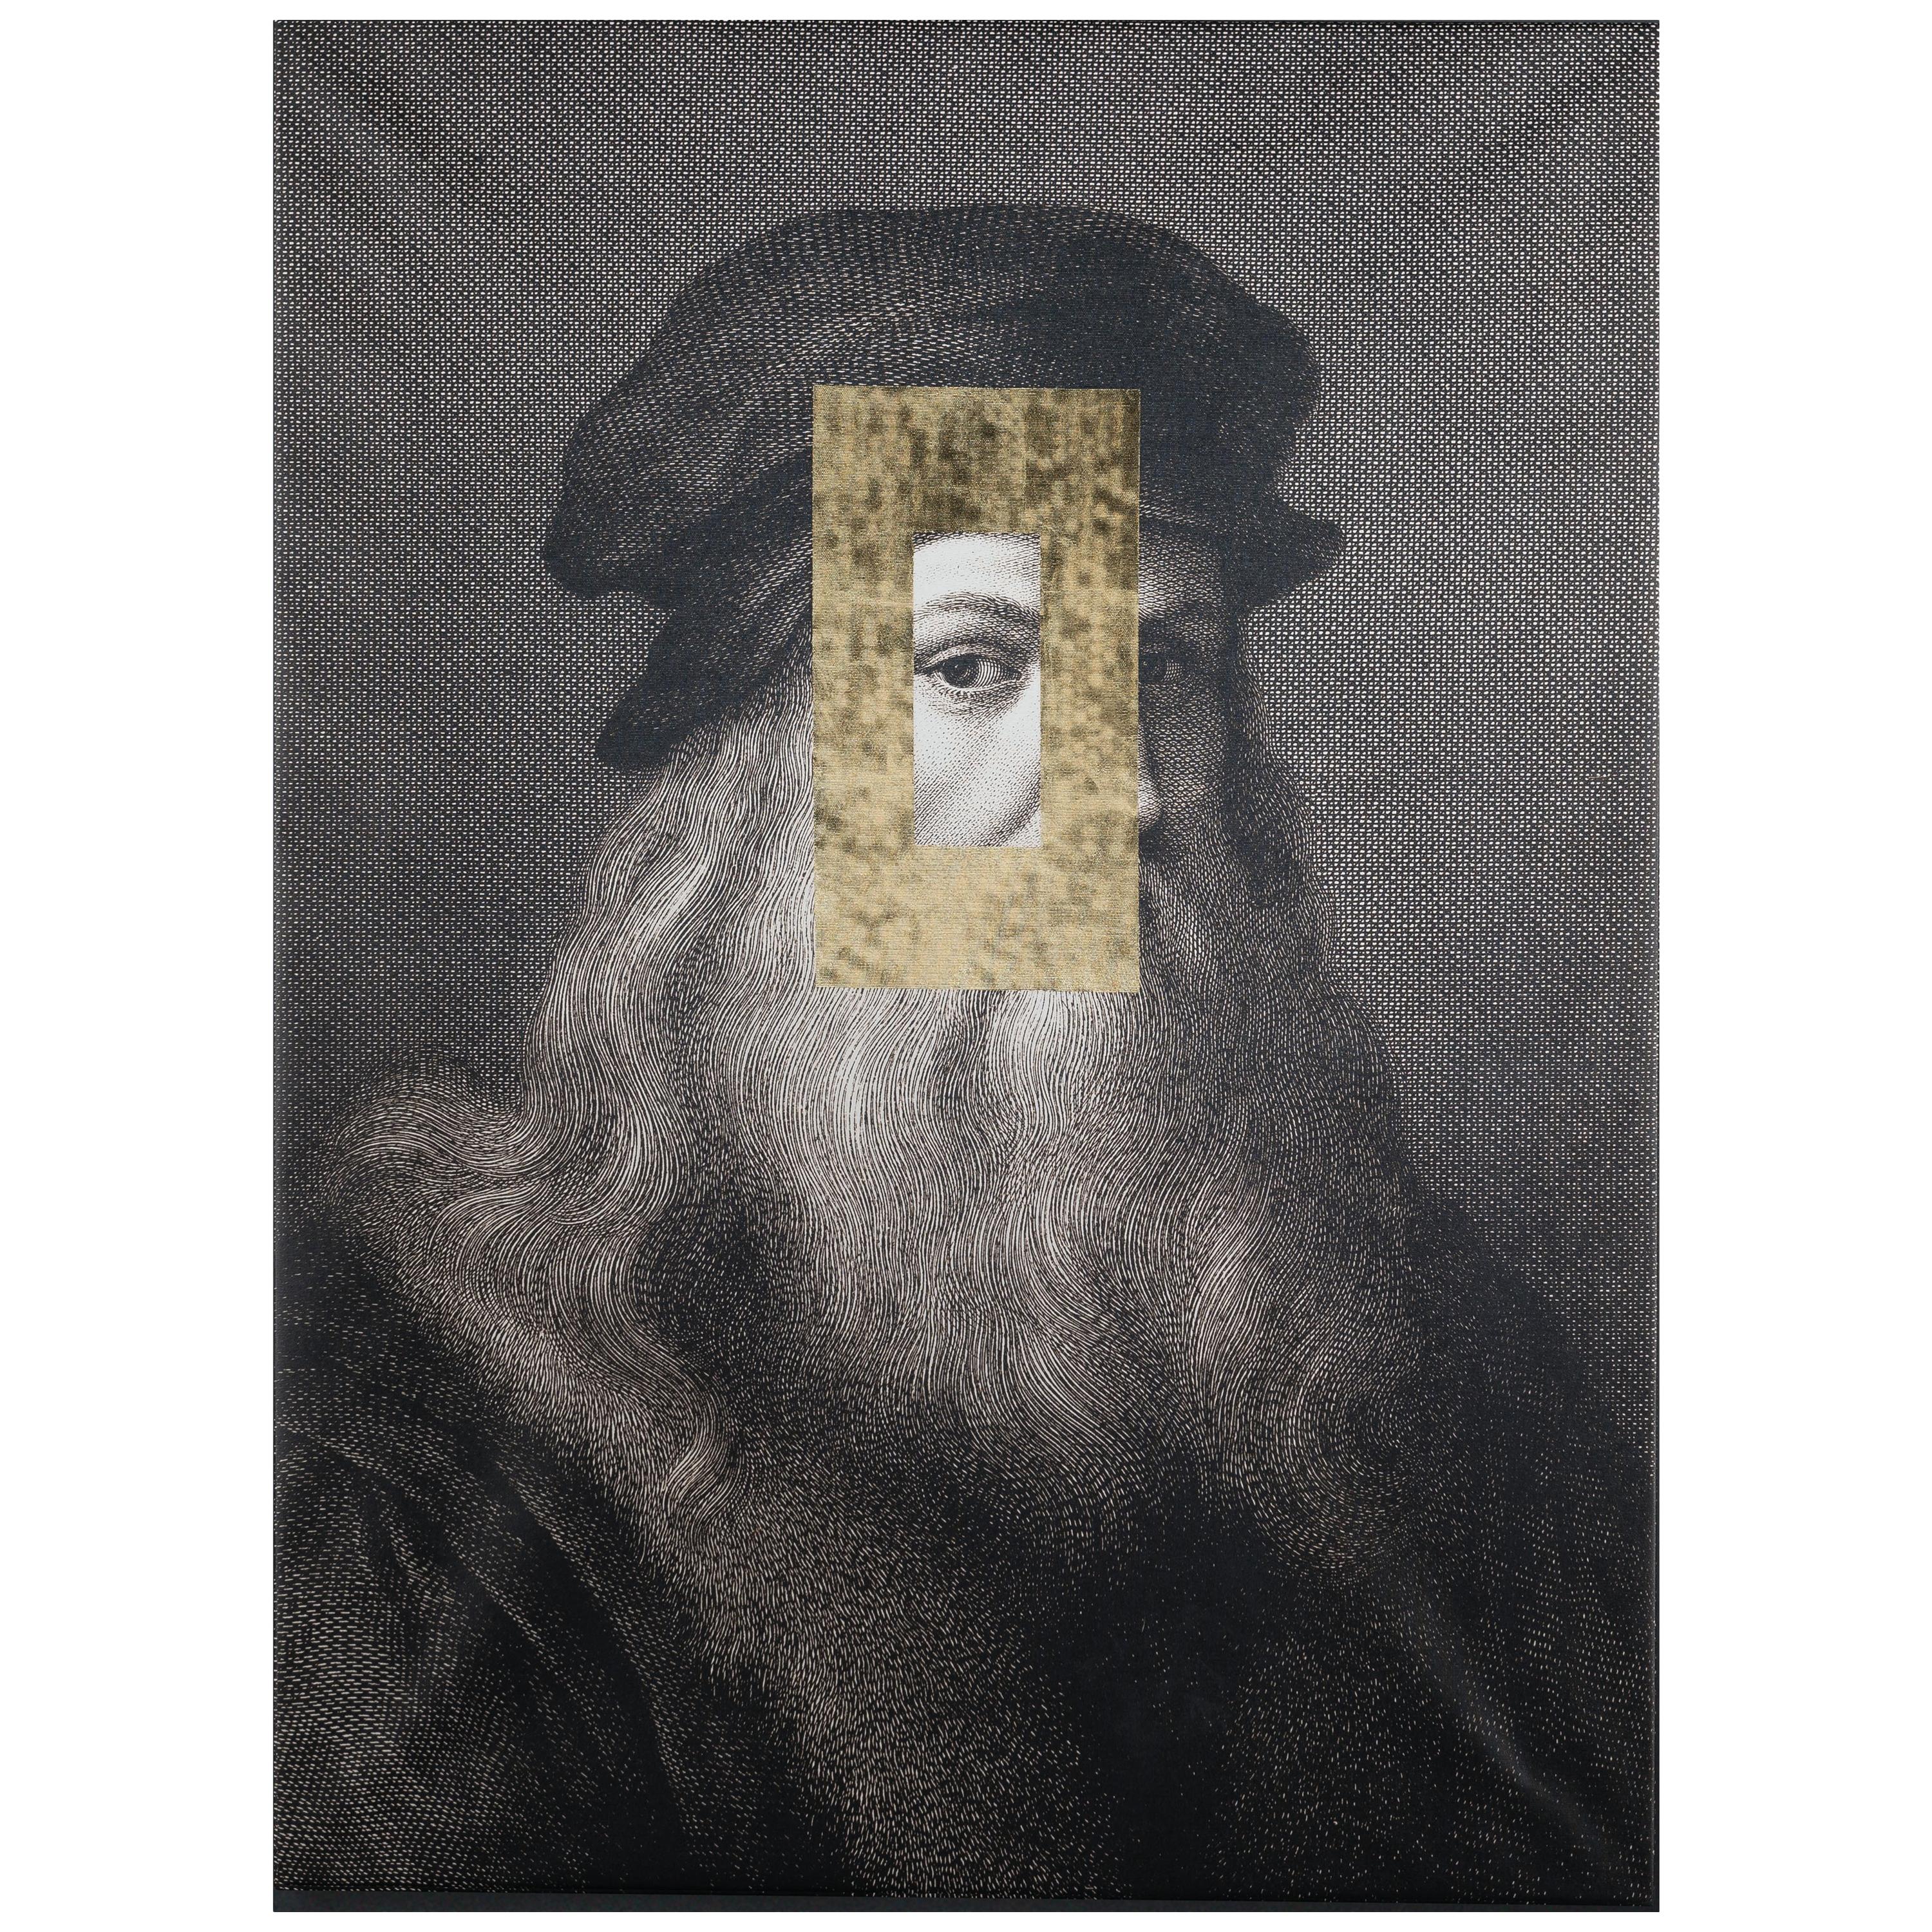 Panneau décoratif Leonardo Eye, toile imprimée et décoration à feuilles d'or, Italie